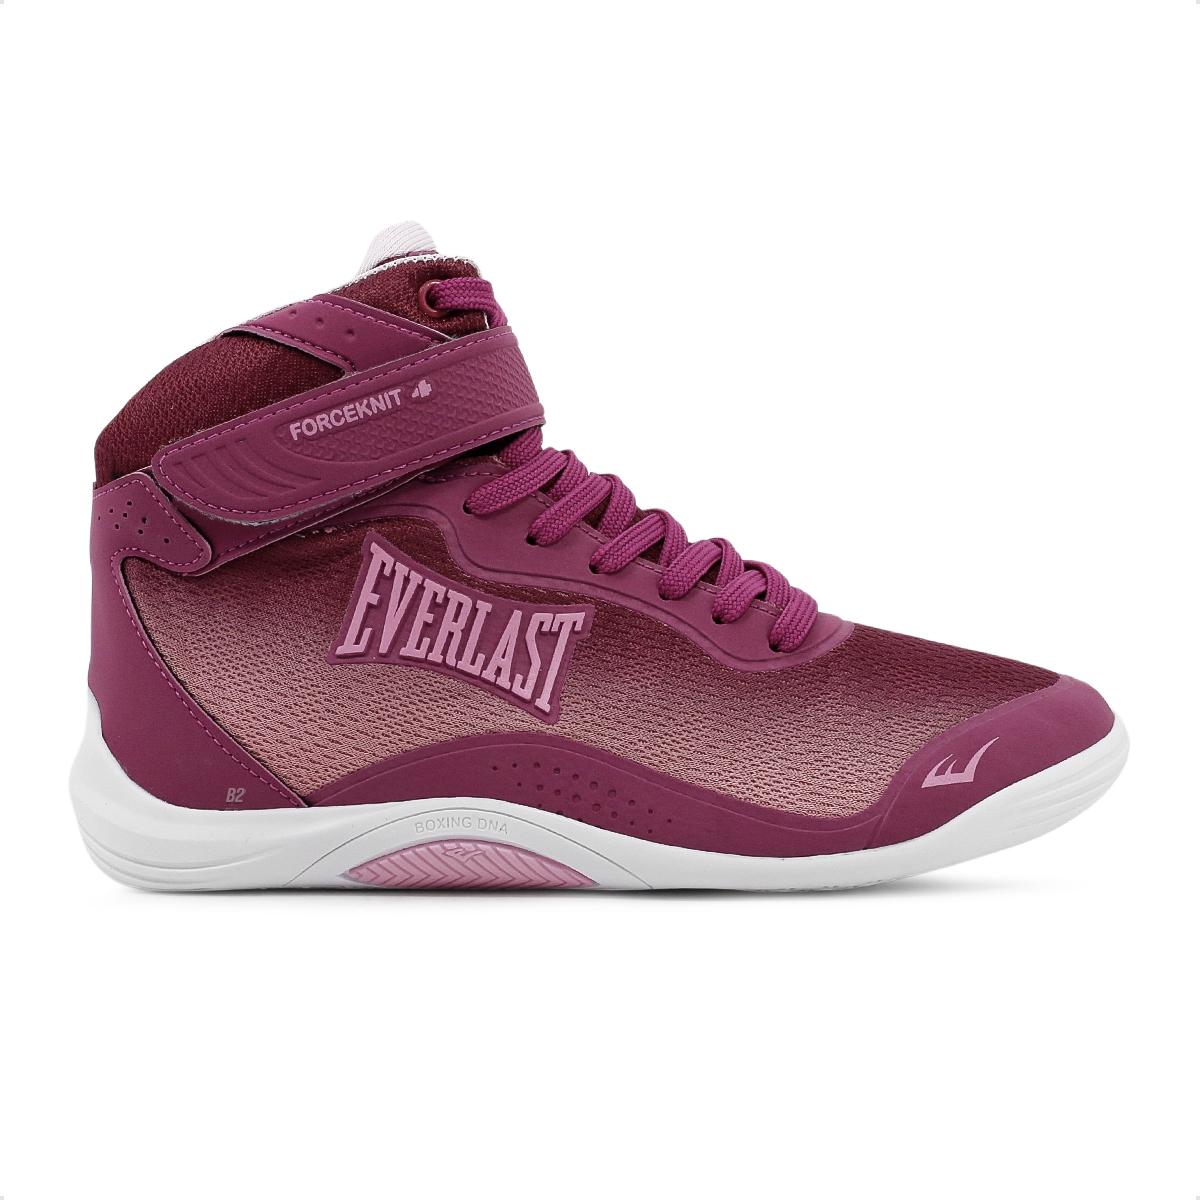 Tênis Esportivo Feminino Everlast Forceknit 4 Para Academia 132 -  Passarelle Calçados